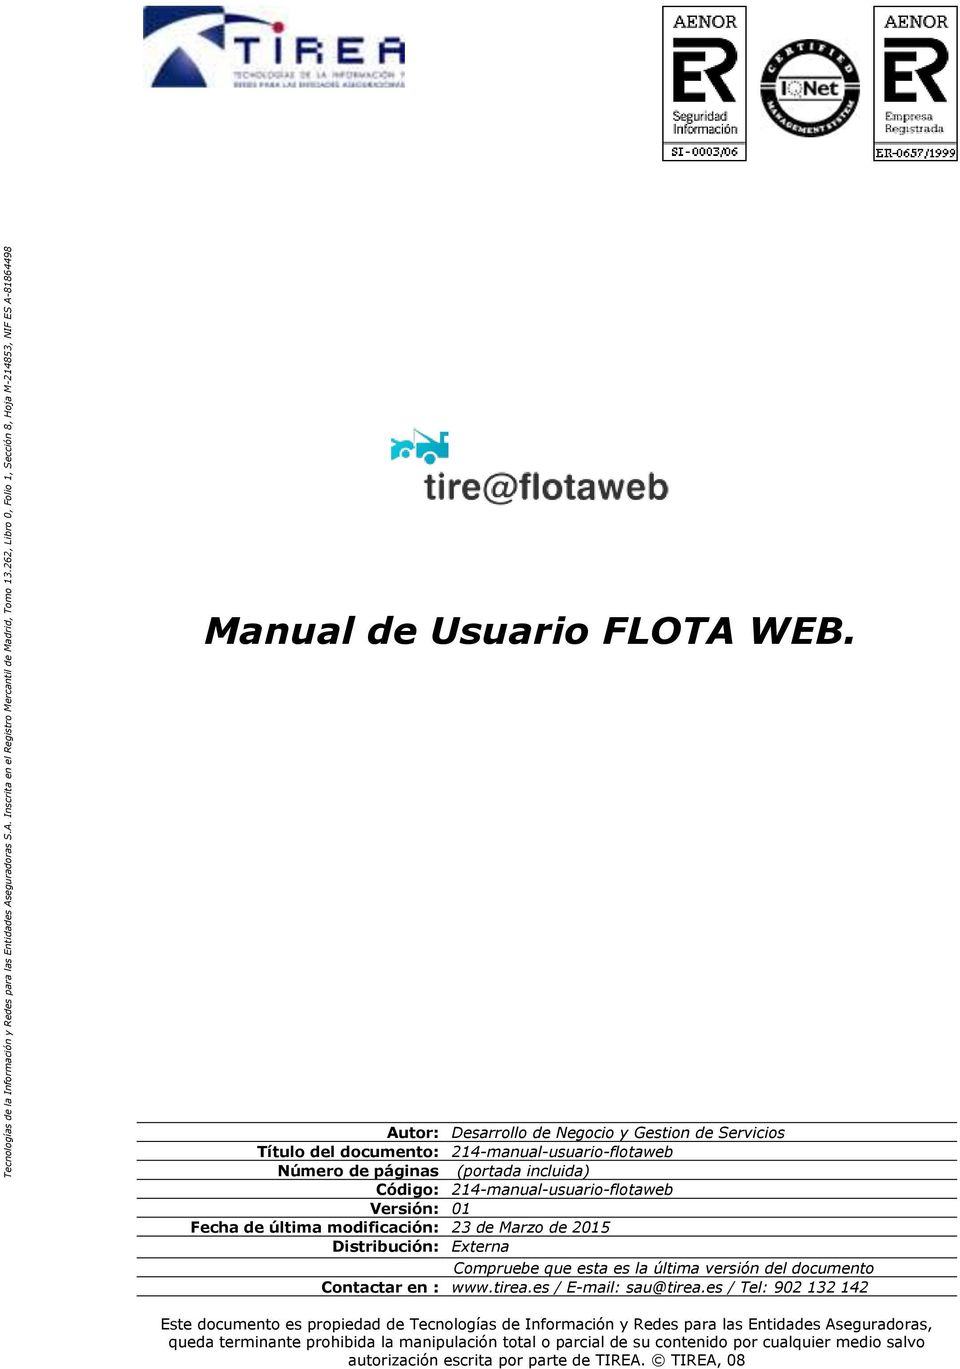 Autor: Título del documento: 214-manual-usuario-flotaweb Número de páginas (portada incluida) Código: 214-manual-usuario-flotaweb Versión: 01 Fecha de última modificación: 23 de Marzo de 2015